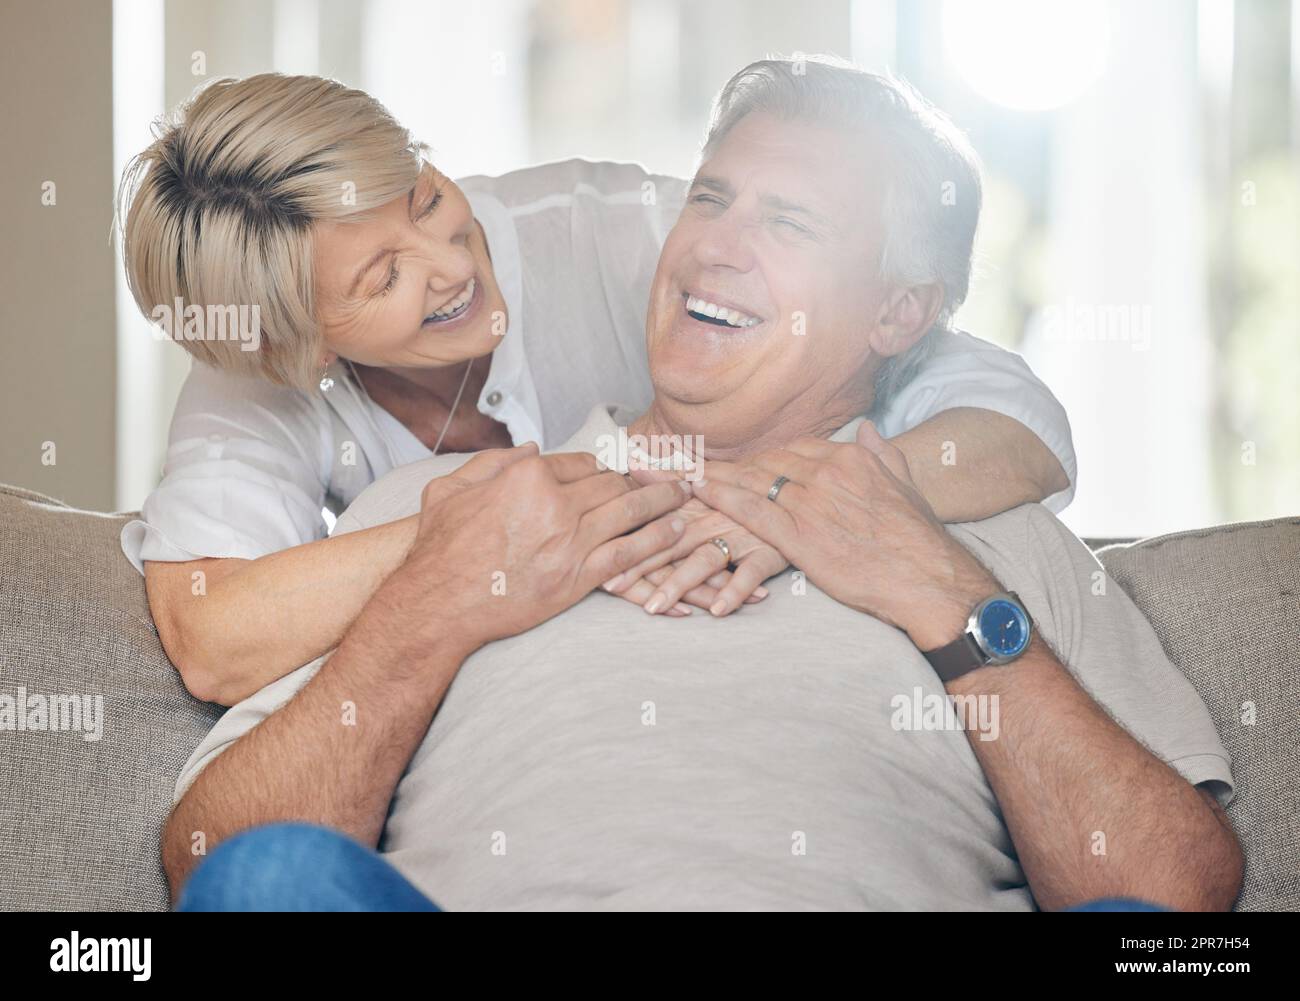 Essere una famiglia significa essere parte di qualcosa di meraviglioso: Una coppia matura seduta sul divano a casa. Foto Stock